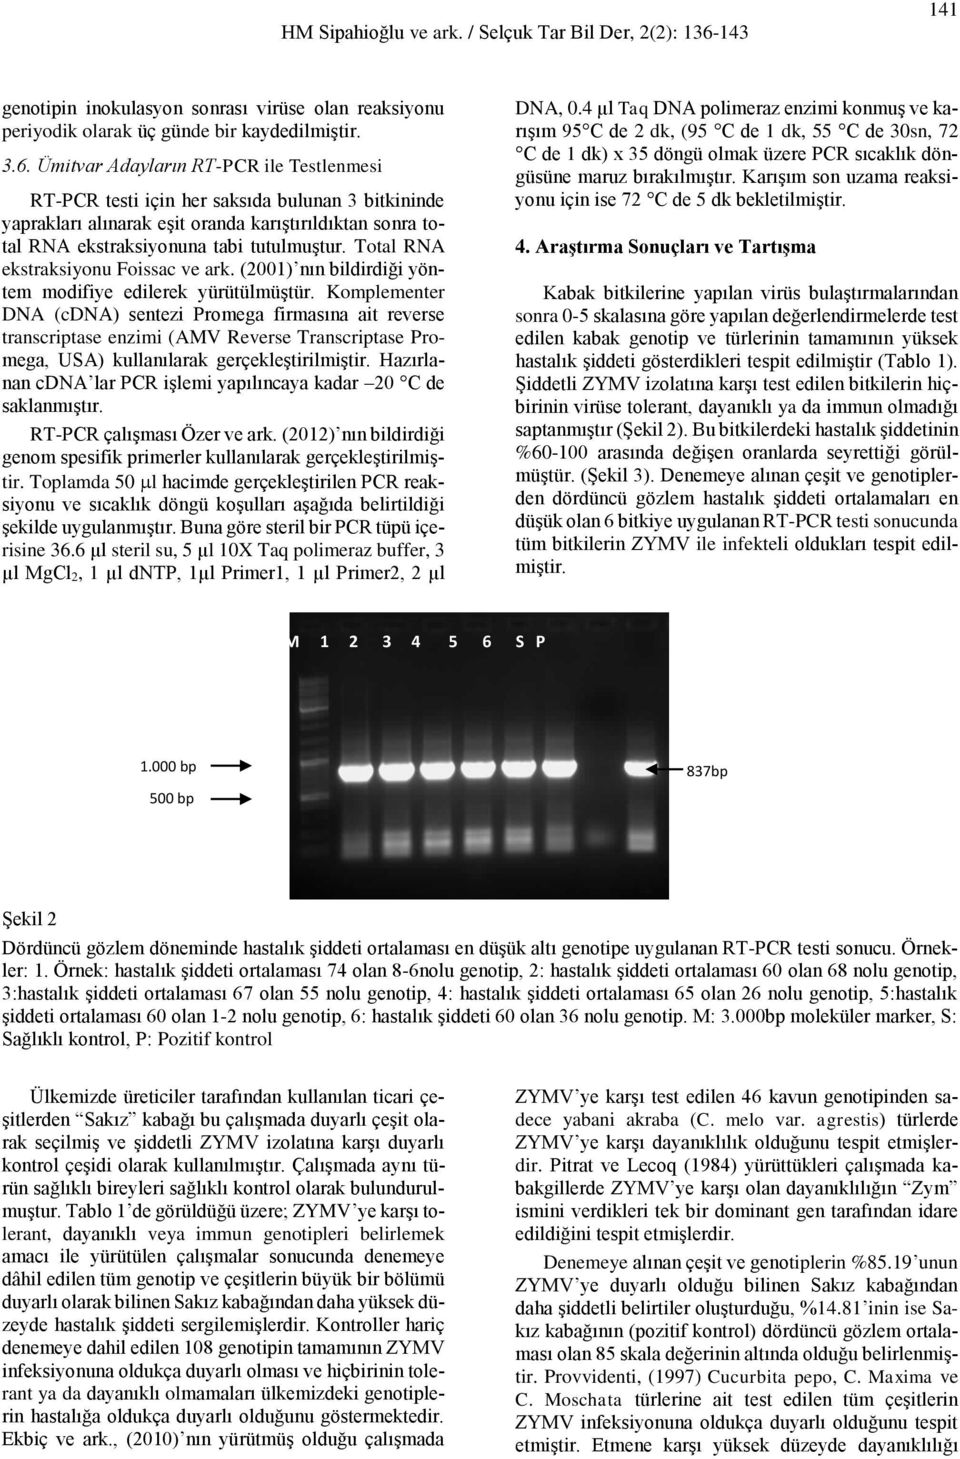 Total RNA ekstraksiyonu Foissac ve ark. (2001) nın bildirdiği yöntem modifiye edilerek yürütülmüştür.